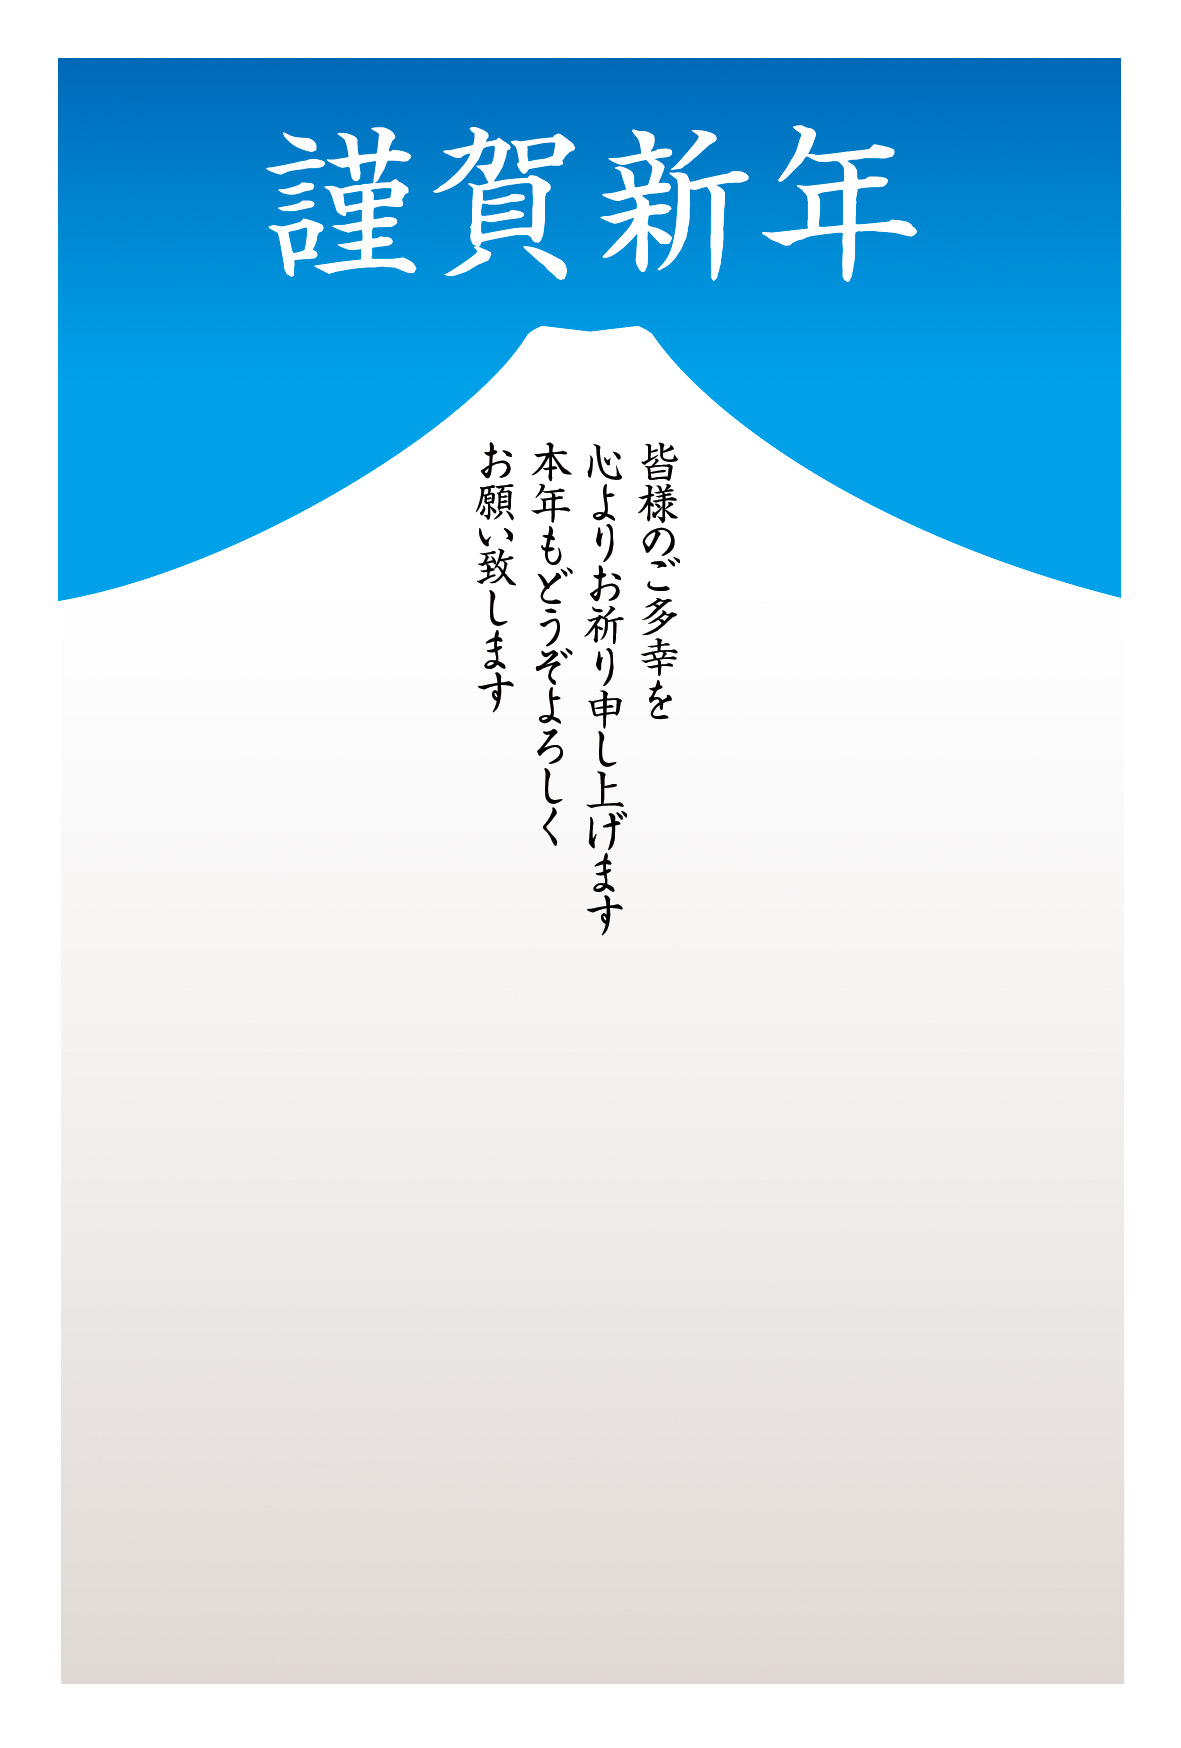 シンプルな富士山イラスト スタンダード年賀状無料素材engi07